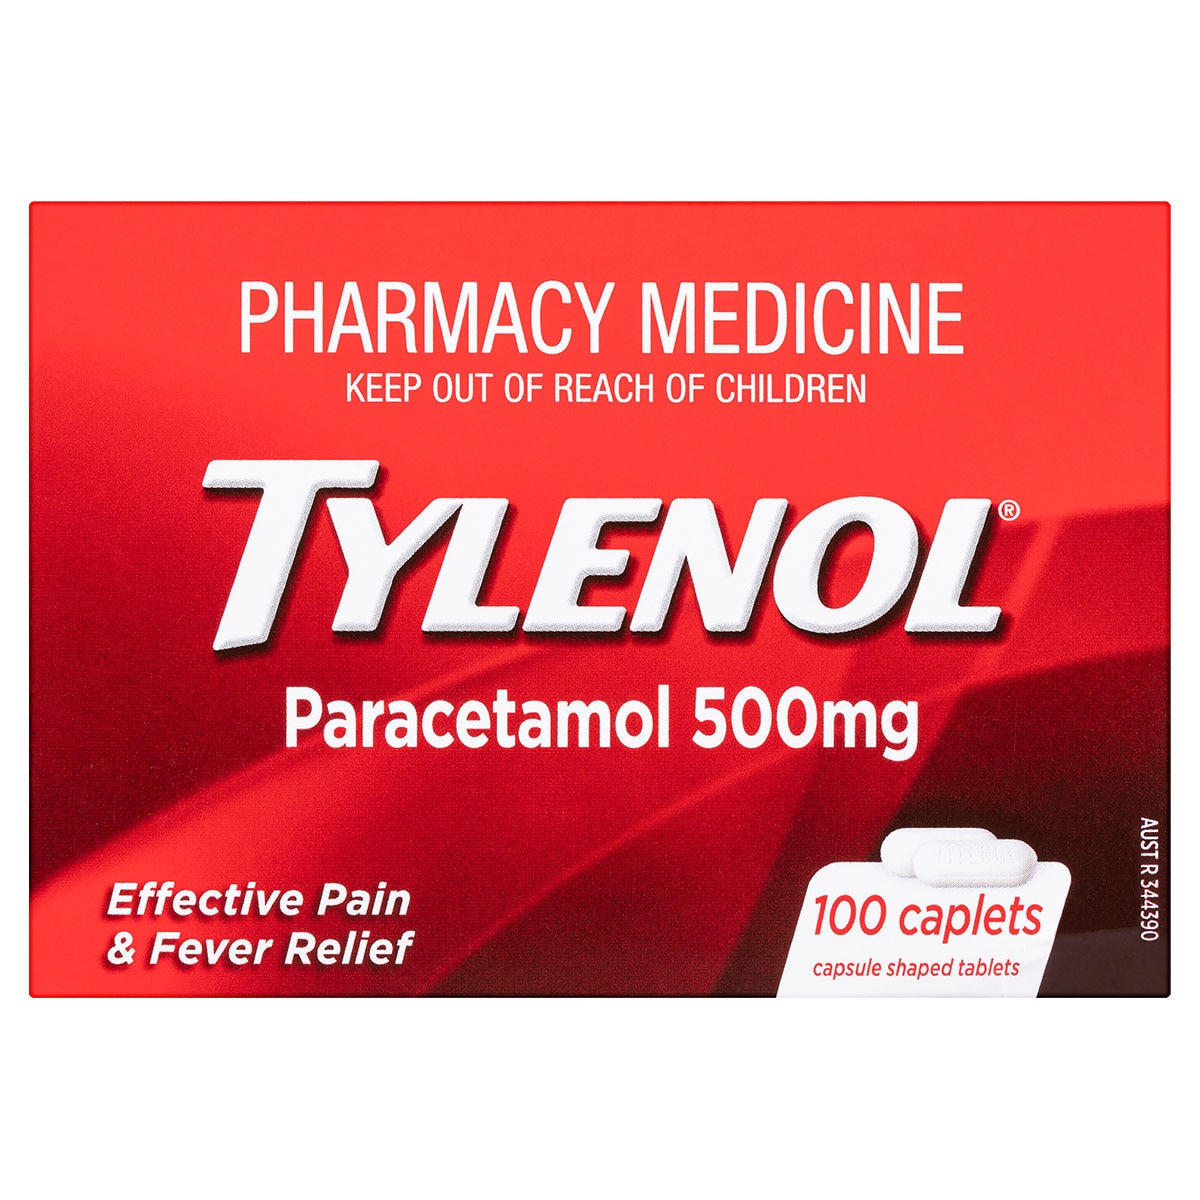 Tylenol Pain & Fever Relief 100 Caplets